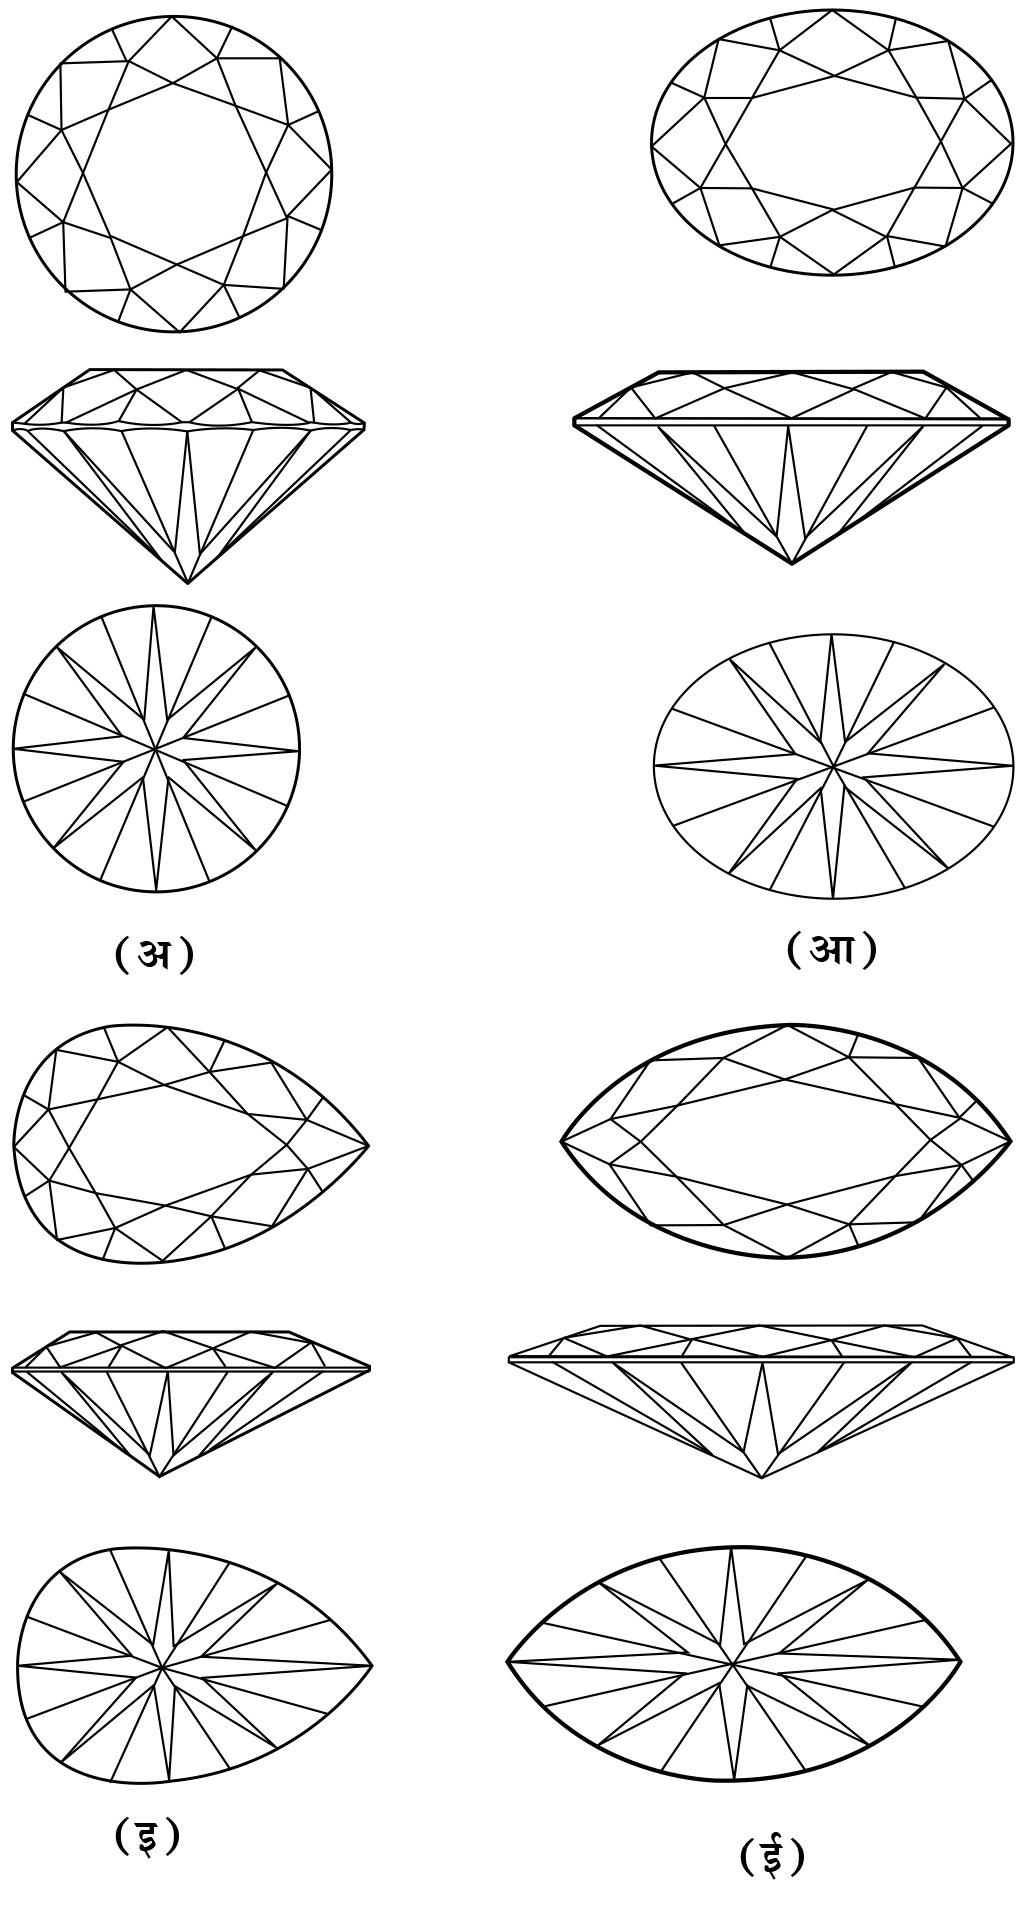 आ. ४. हिऱ्याचे विविध आकार : (अ) गोलीय, (आ) लंबवर्तुळाकार, (इ) नासपतीसारखा आकार, (ई) मार्क्विझ.